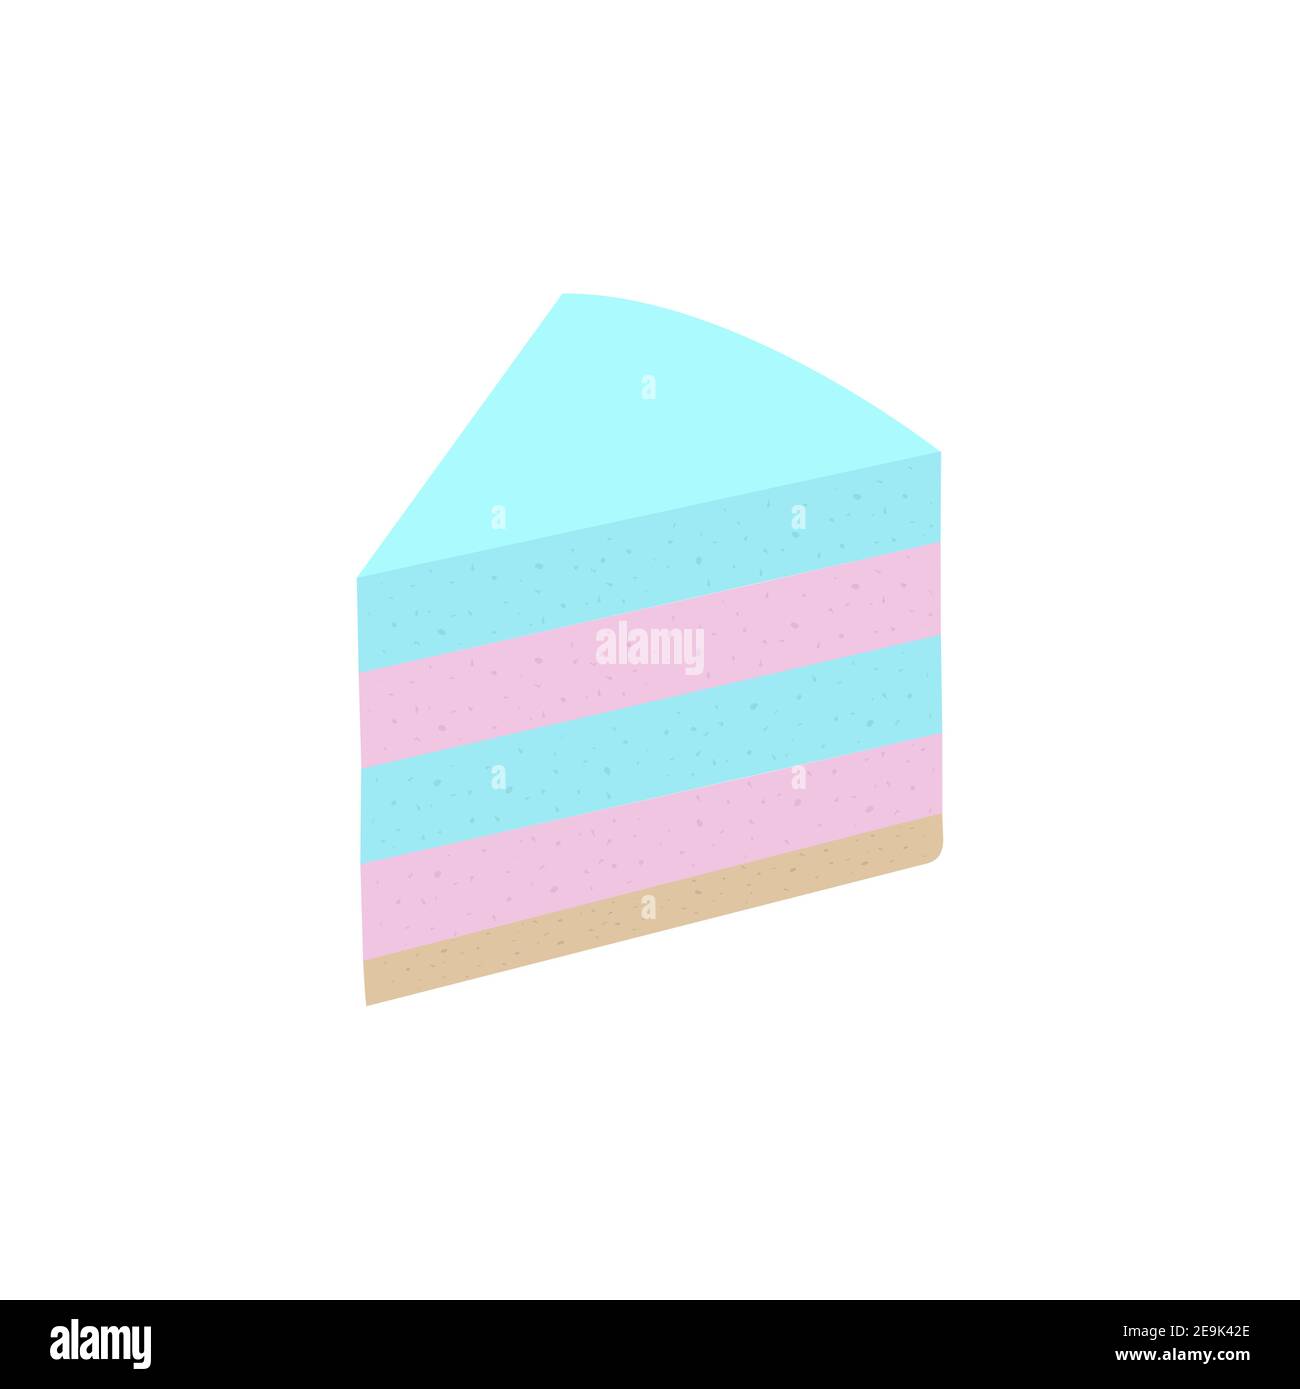 Fetta di torta, dessert nuziale, rosa e blu. Icona ghiaccio in alto - Buon compleanno. Illustrazione vettoriale. Cucina, pasticceria, torta, crostata, Illustrazione Vettoriale